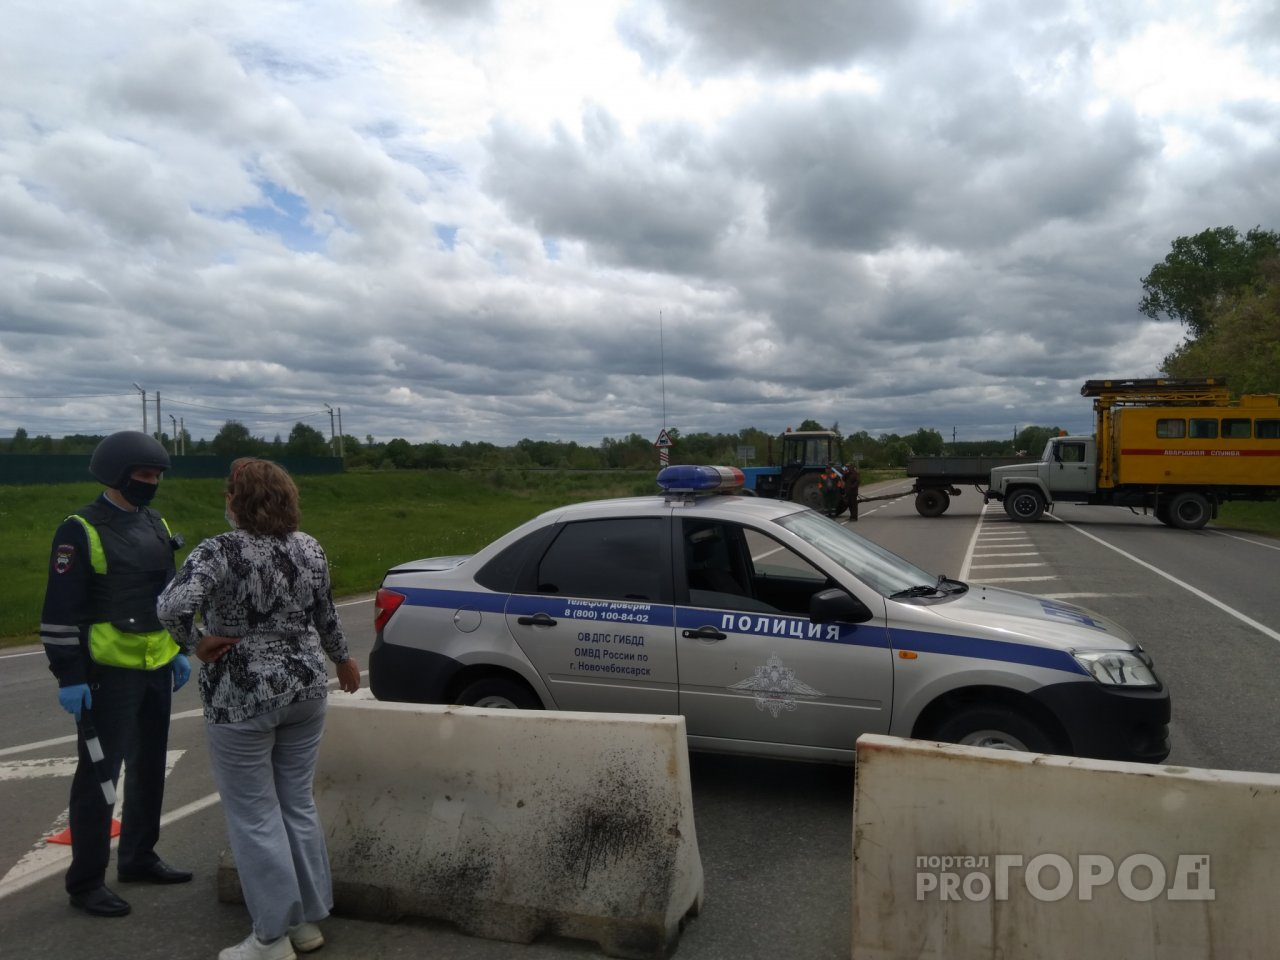 Причина закрытия дороги спецслужбами около Новочебоксарска неизвестна более 20 часов